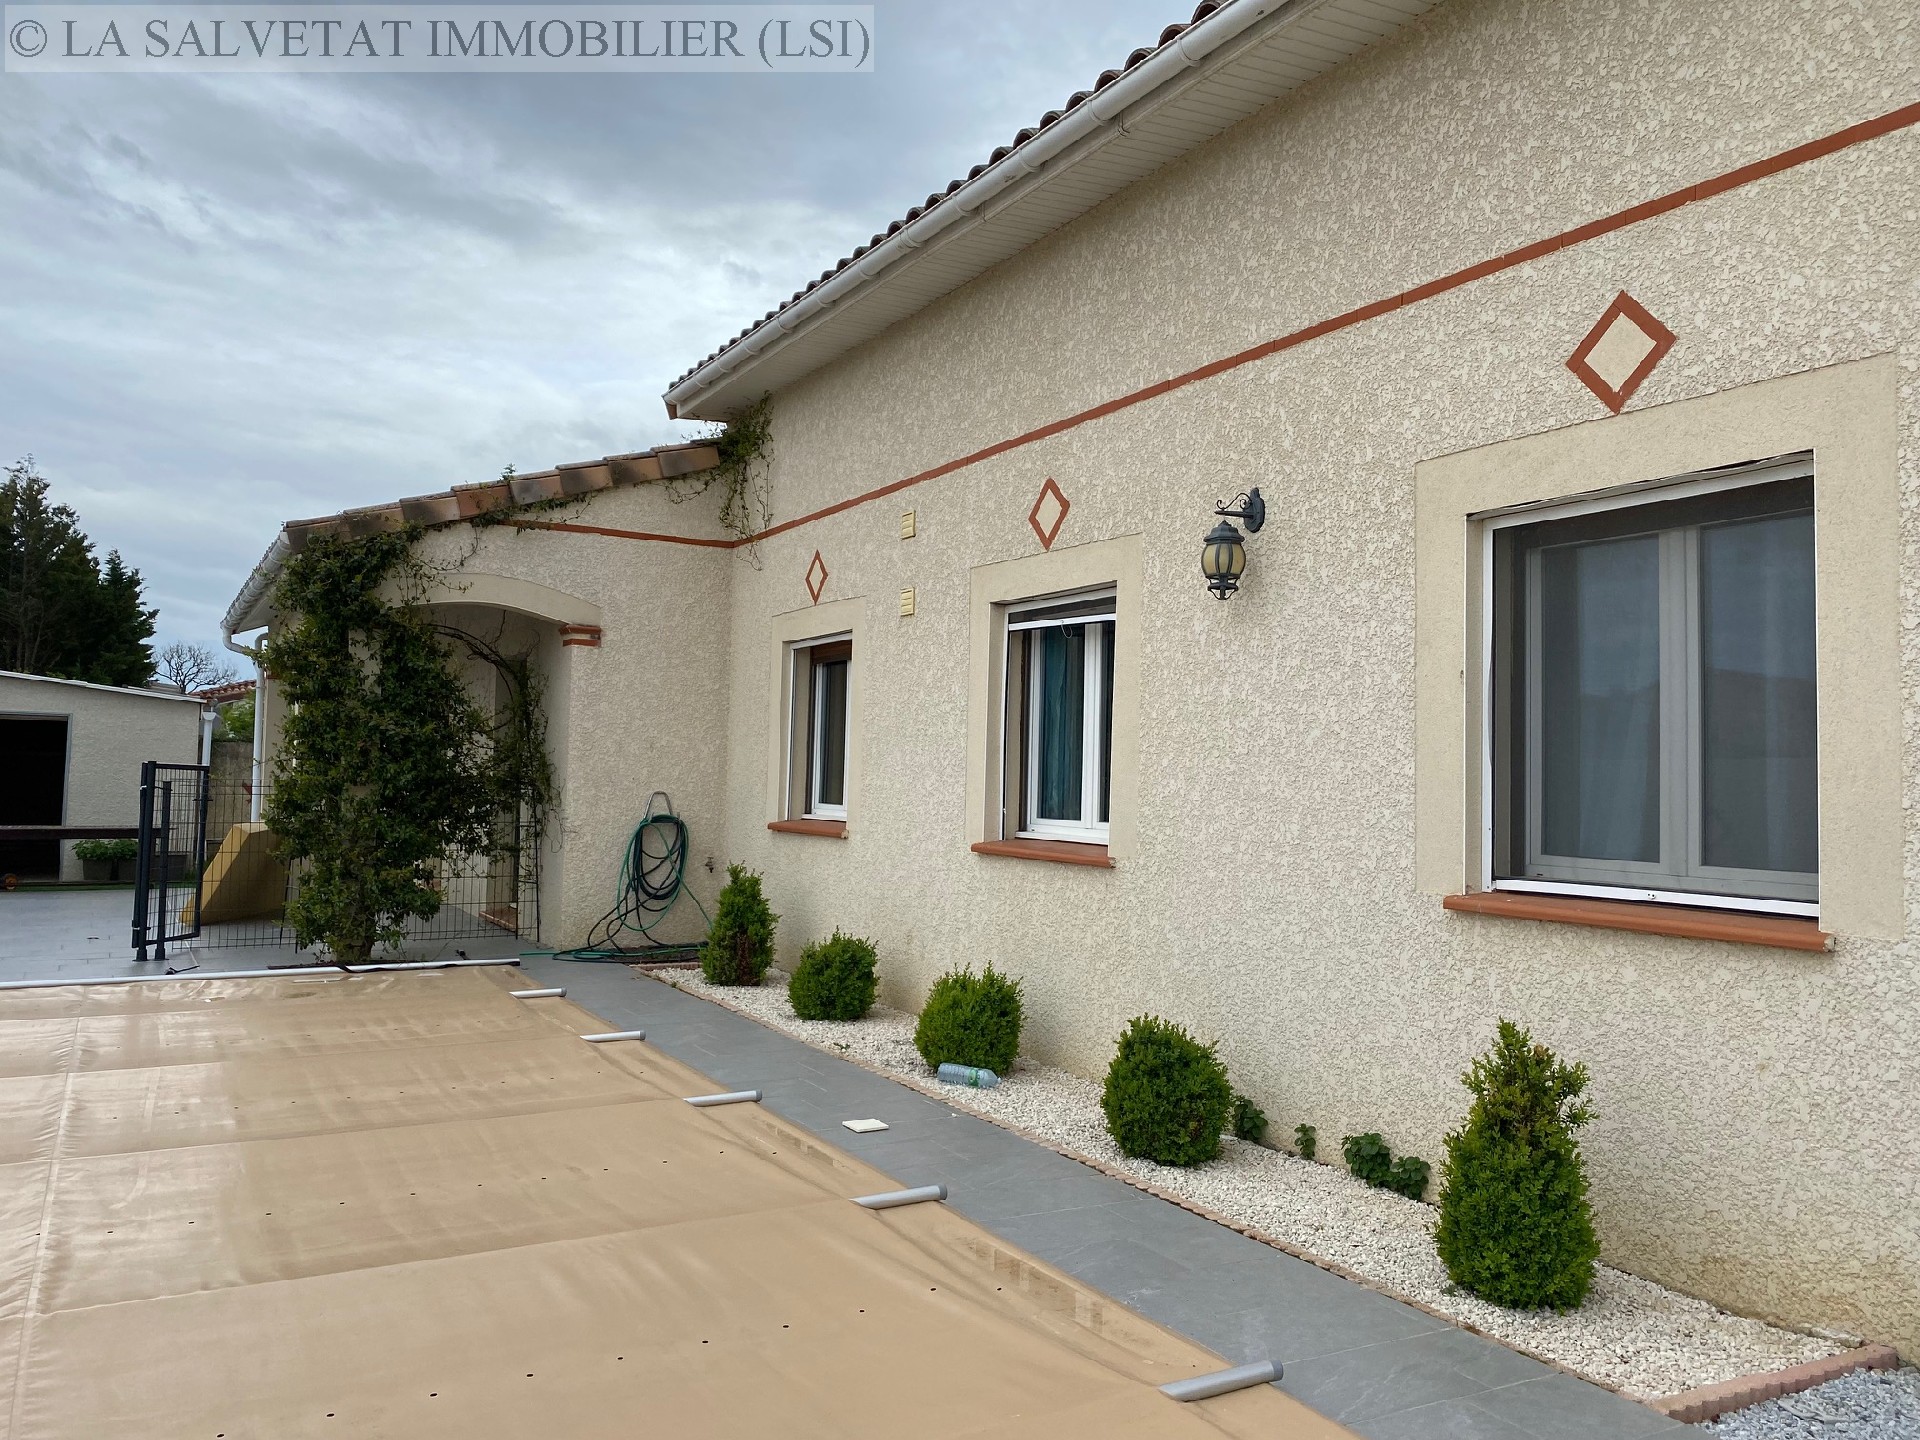 Vente maison-villa - FONTENILLES<br>160 m², 7 pièces